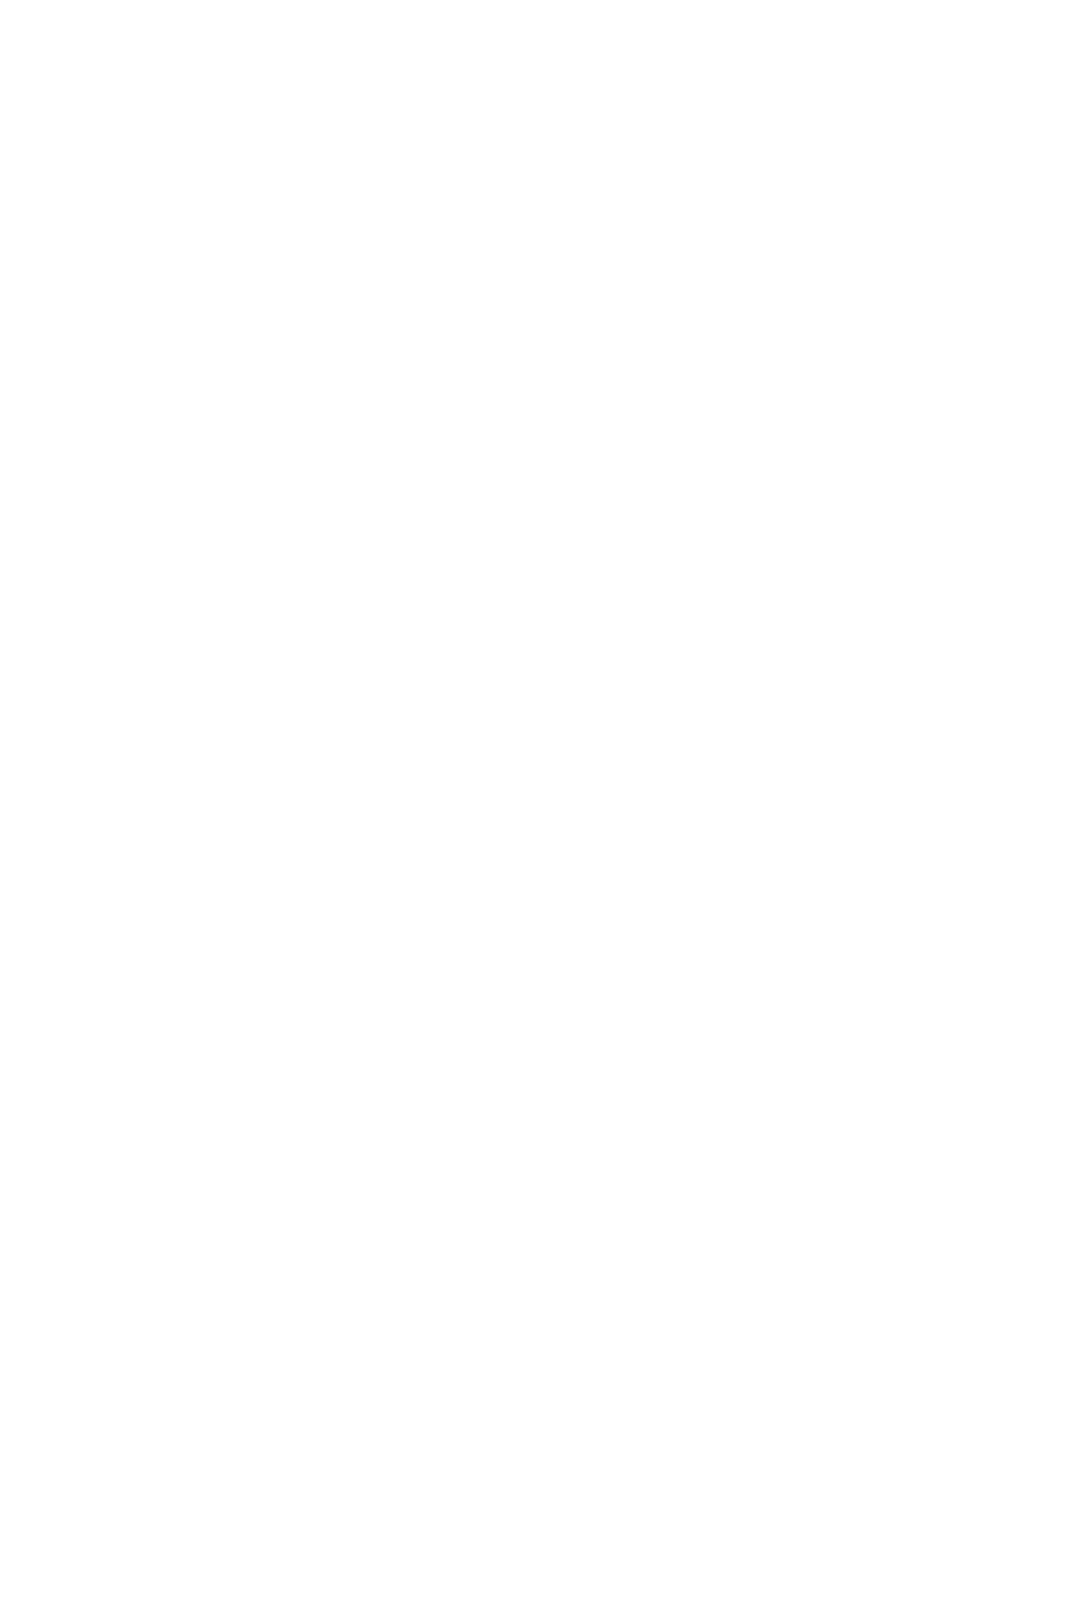 乃木坂46・秋元真夏、うどん打ちに挑戦する“奮闘SHOT”を公開サムネイル画像!